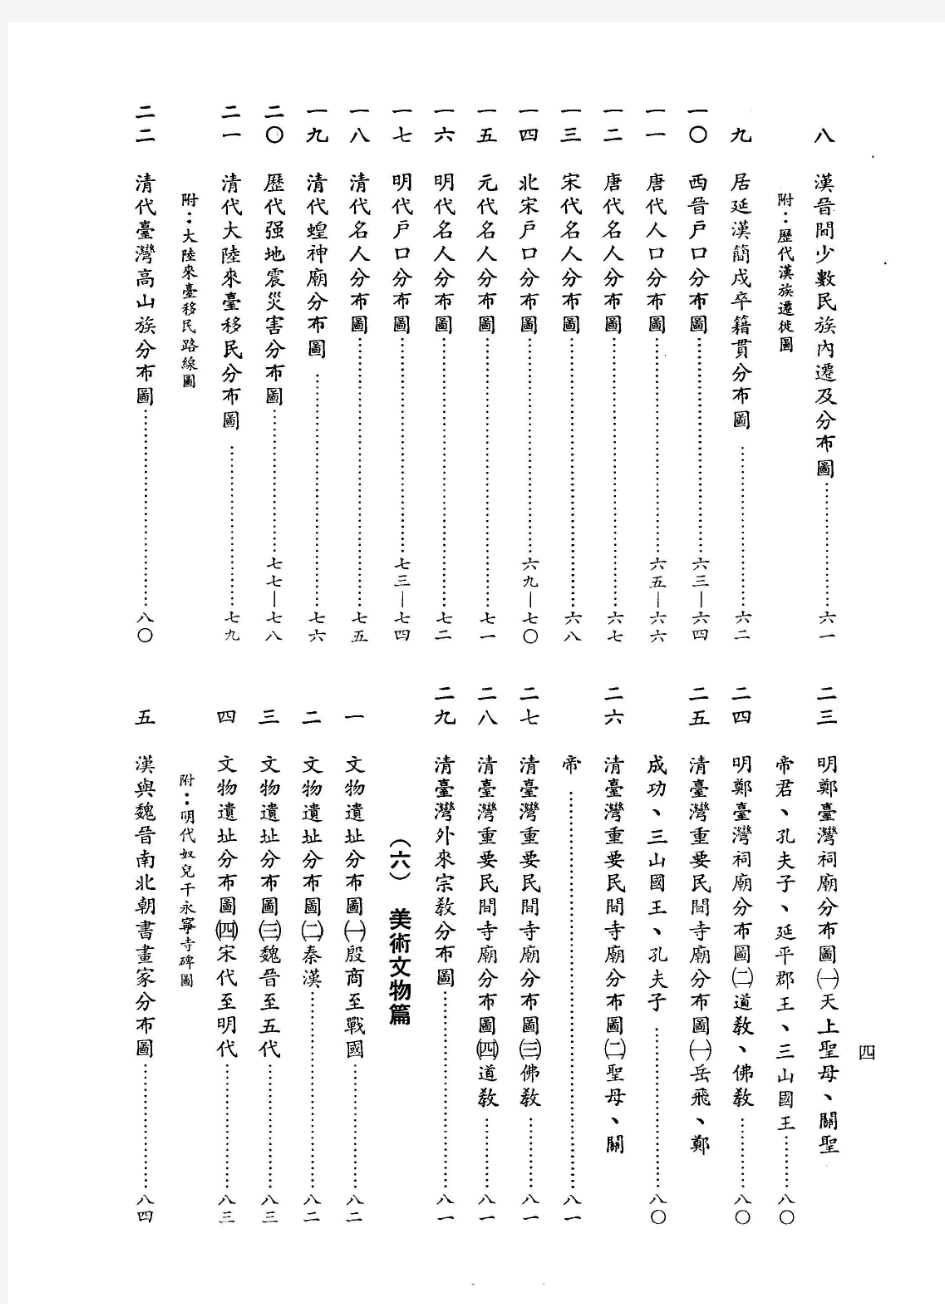 中国历史地图之中国文化大学1980年版下册 (4).jpg